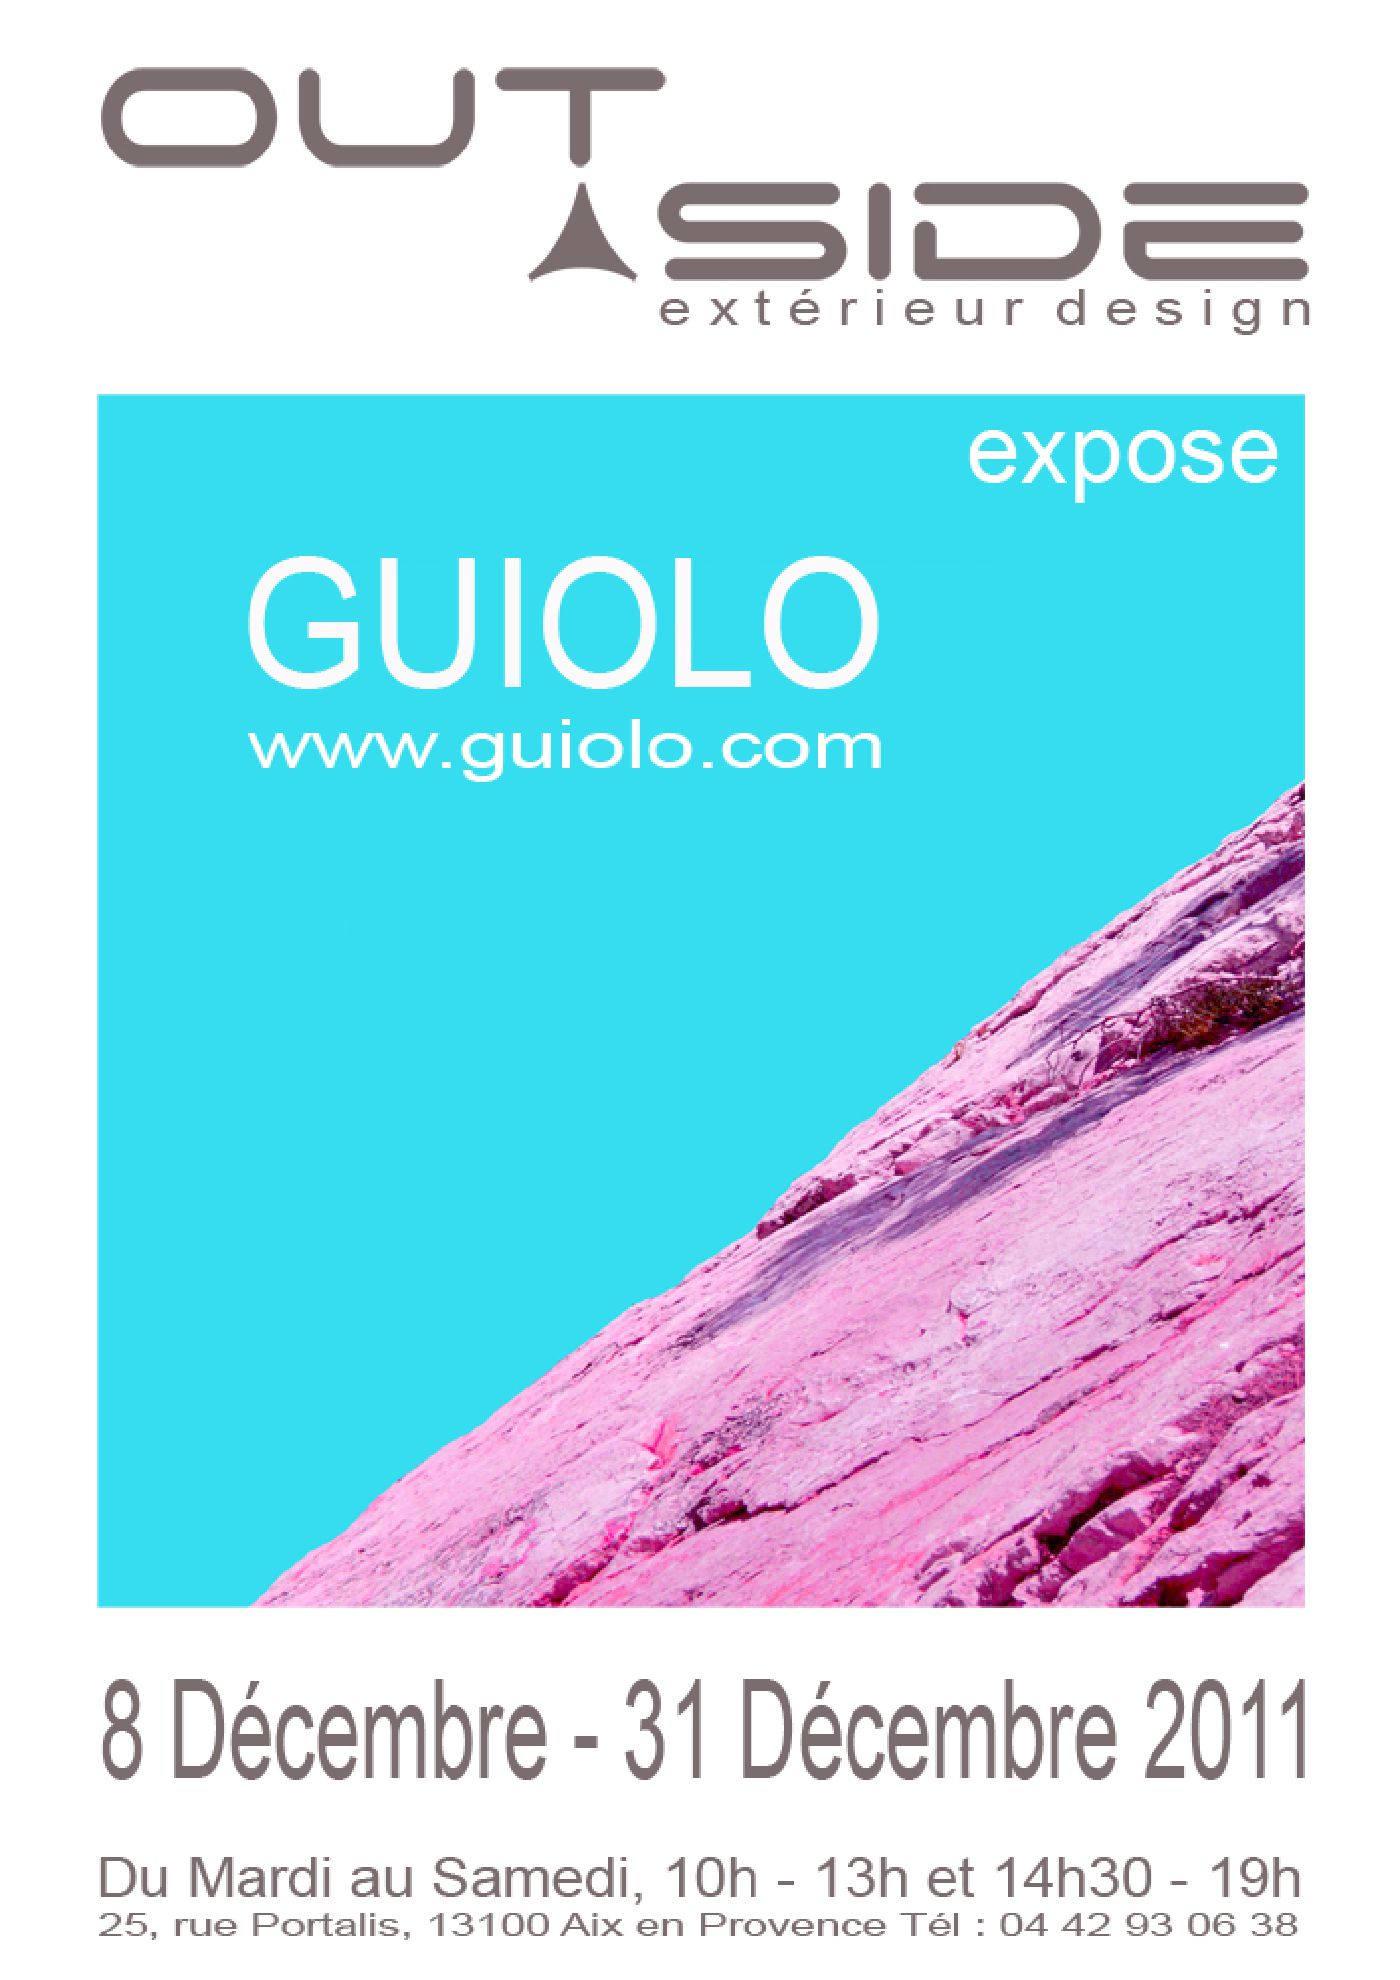 Exposition Outside Design Guiolo photographe à Aix en Provence